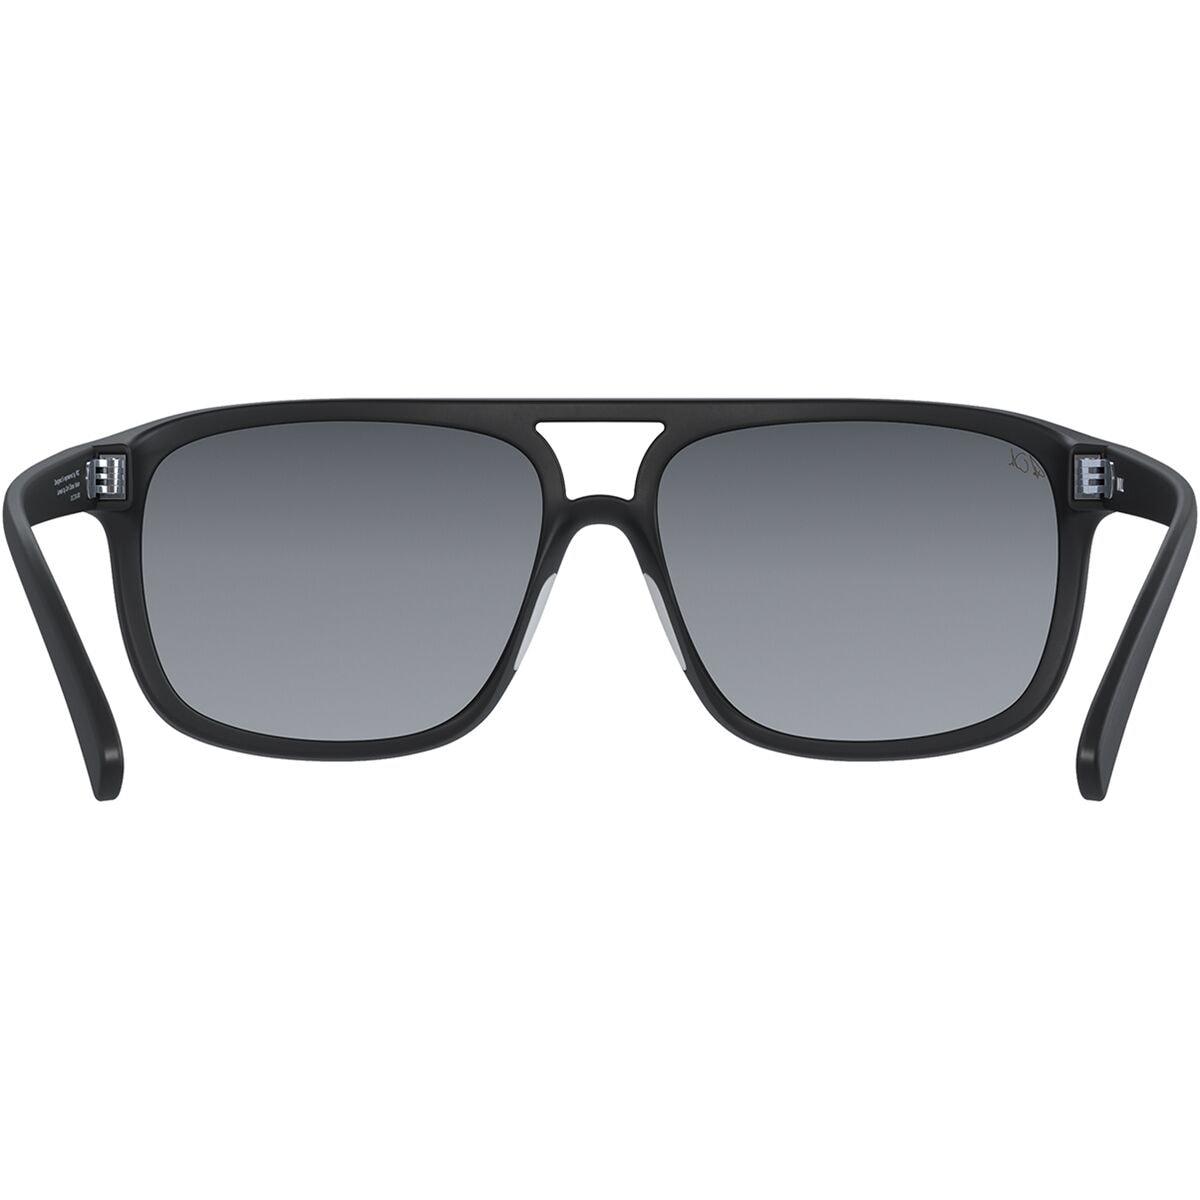 POC Will Fabio Edition Sunglasses - Accessories